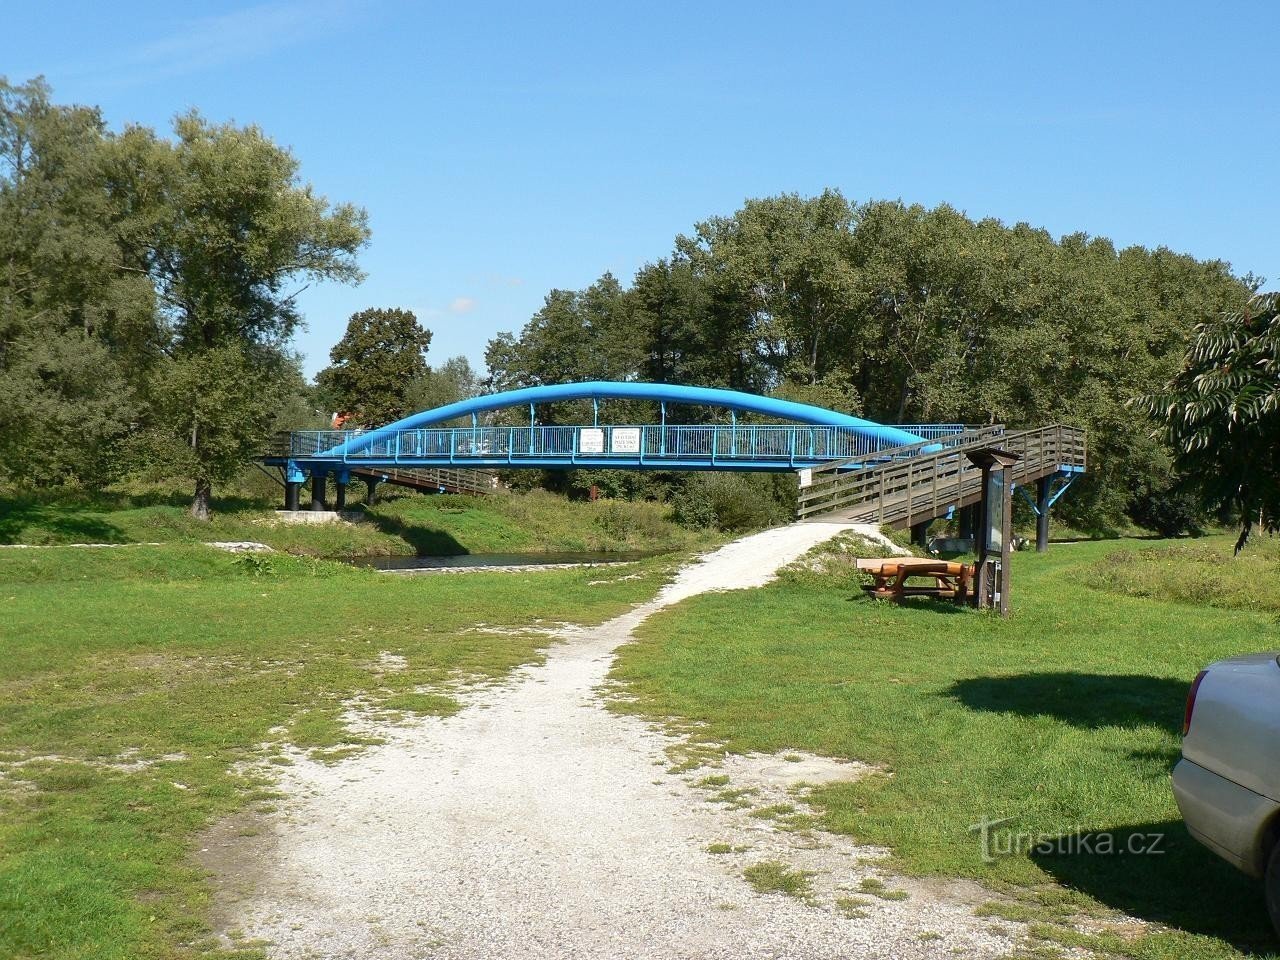 Velké Hydčice, blue footbridge